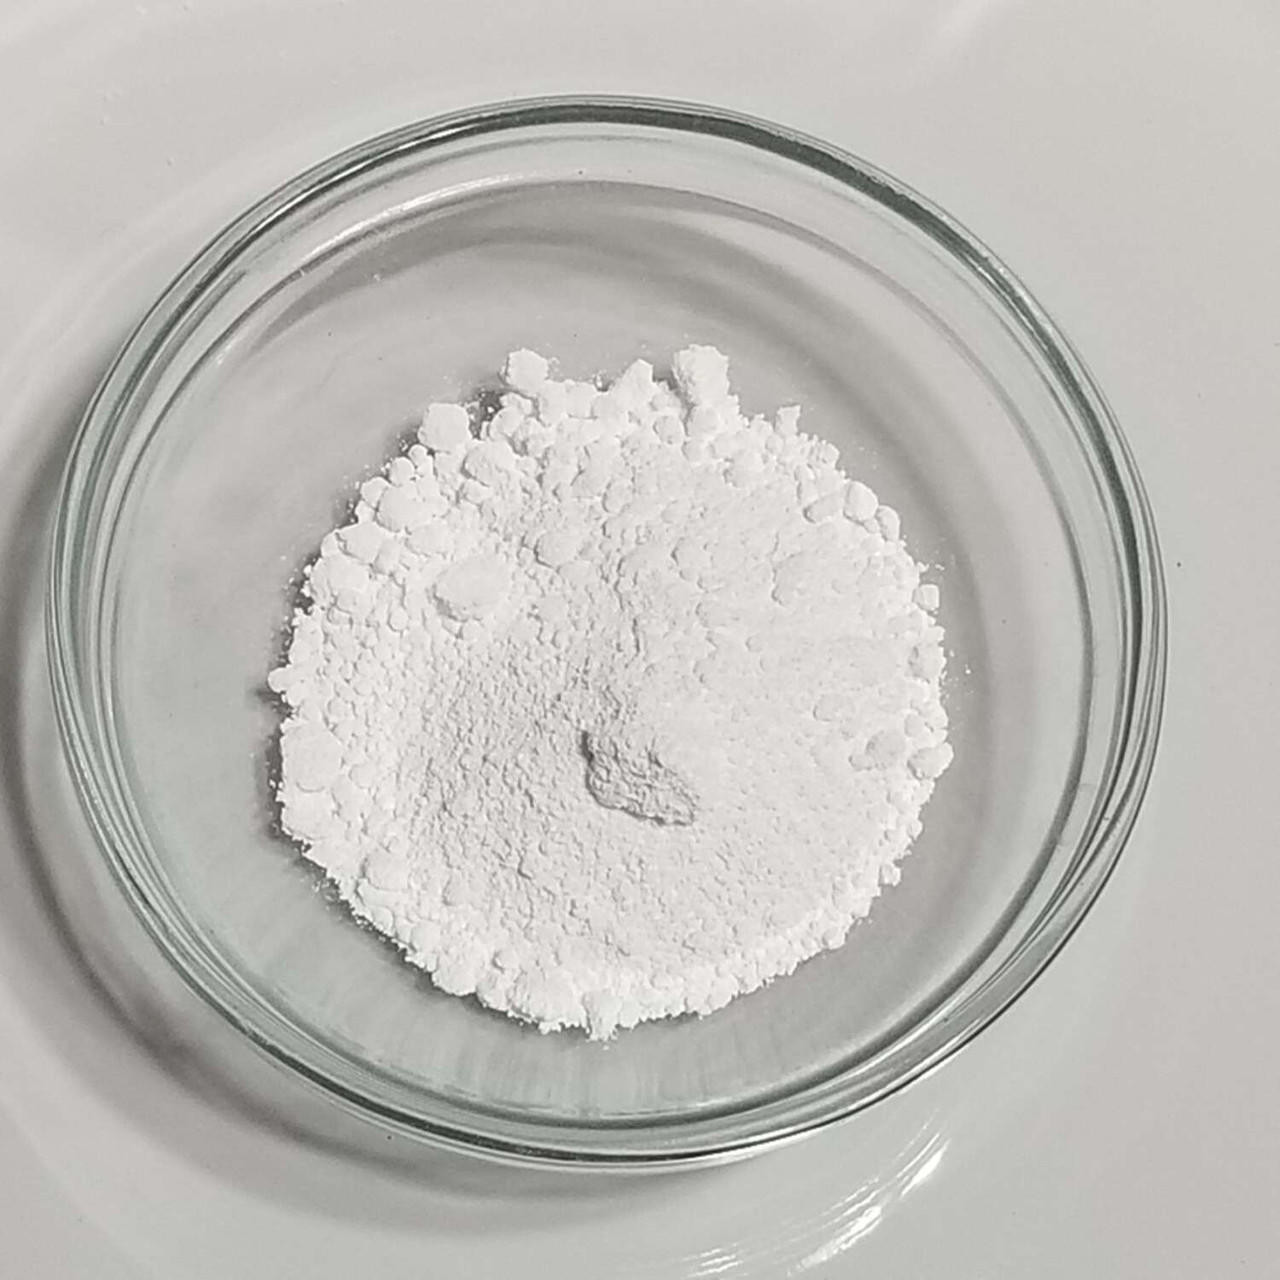 Titanium Dioxide powder in a bowl